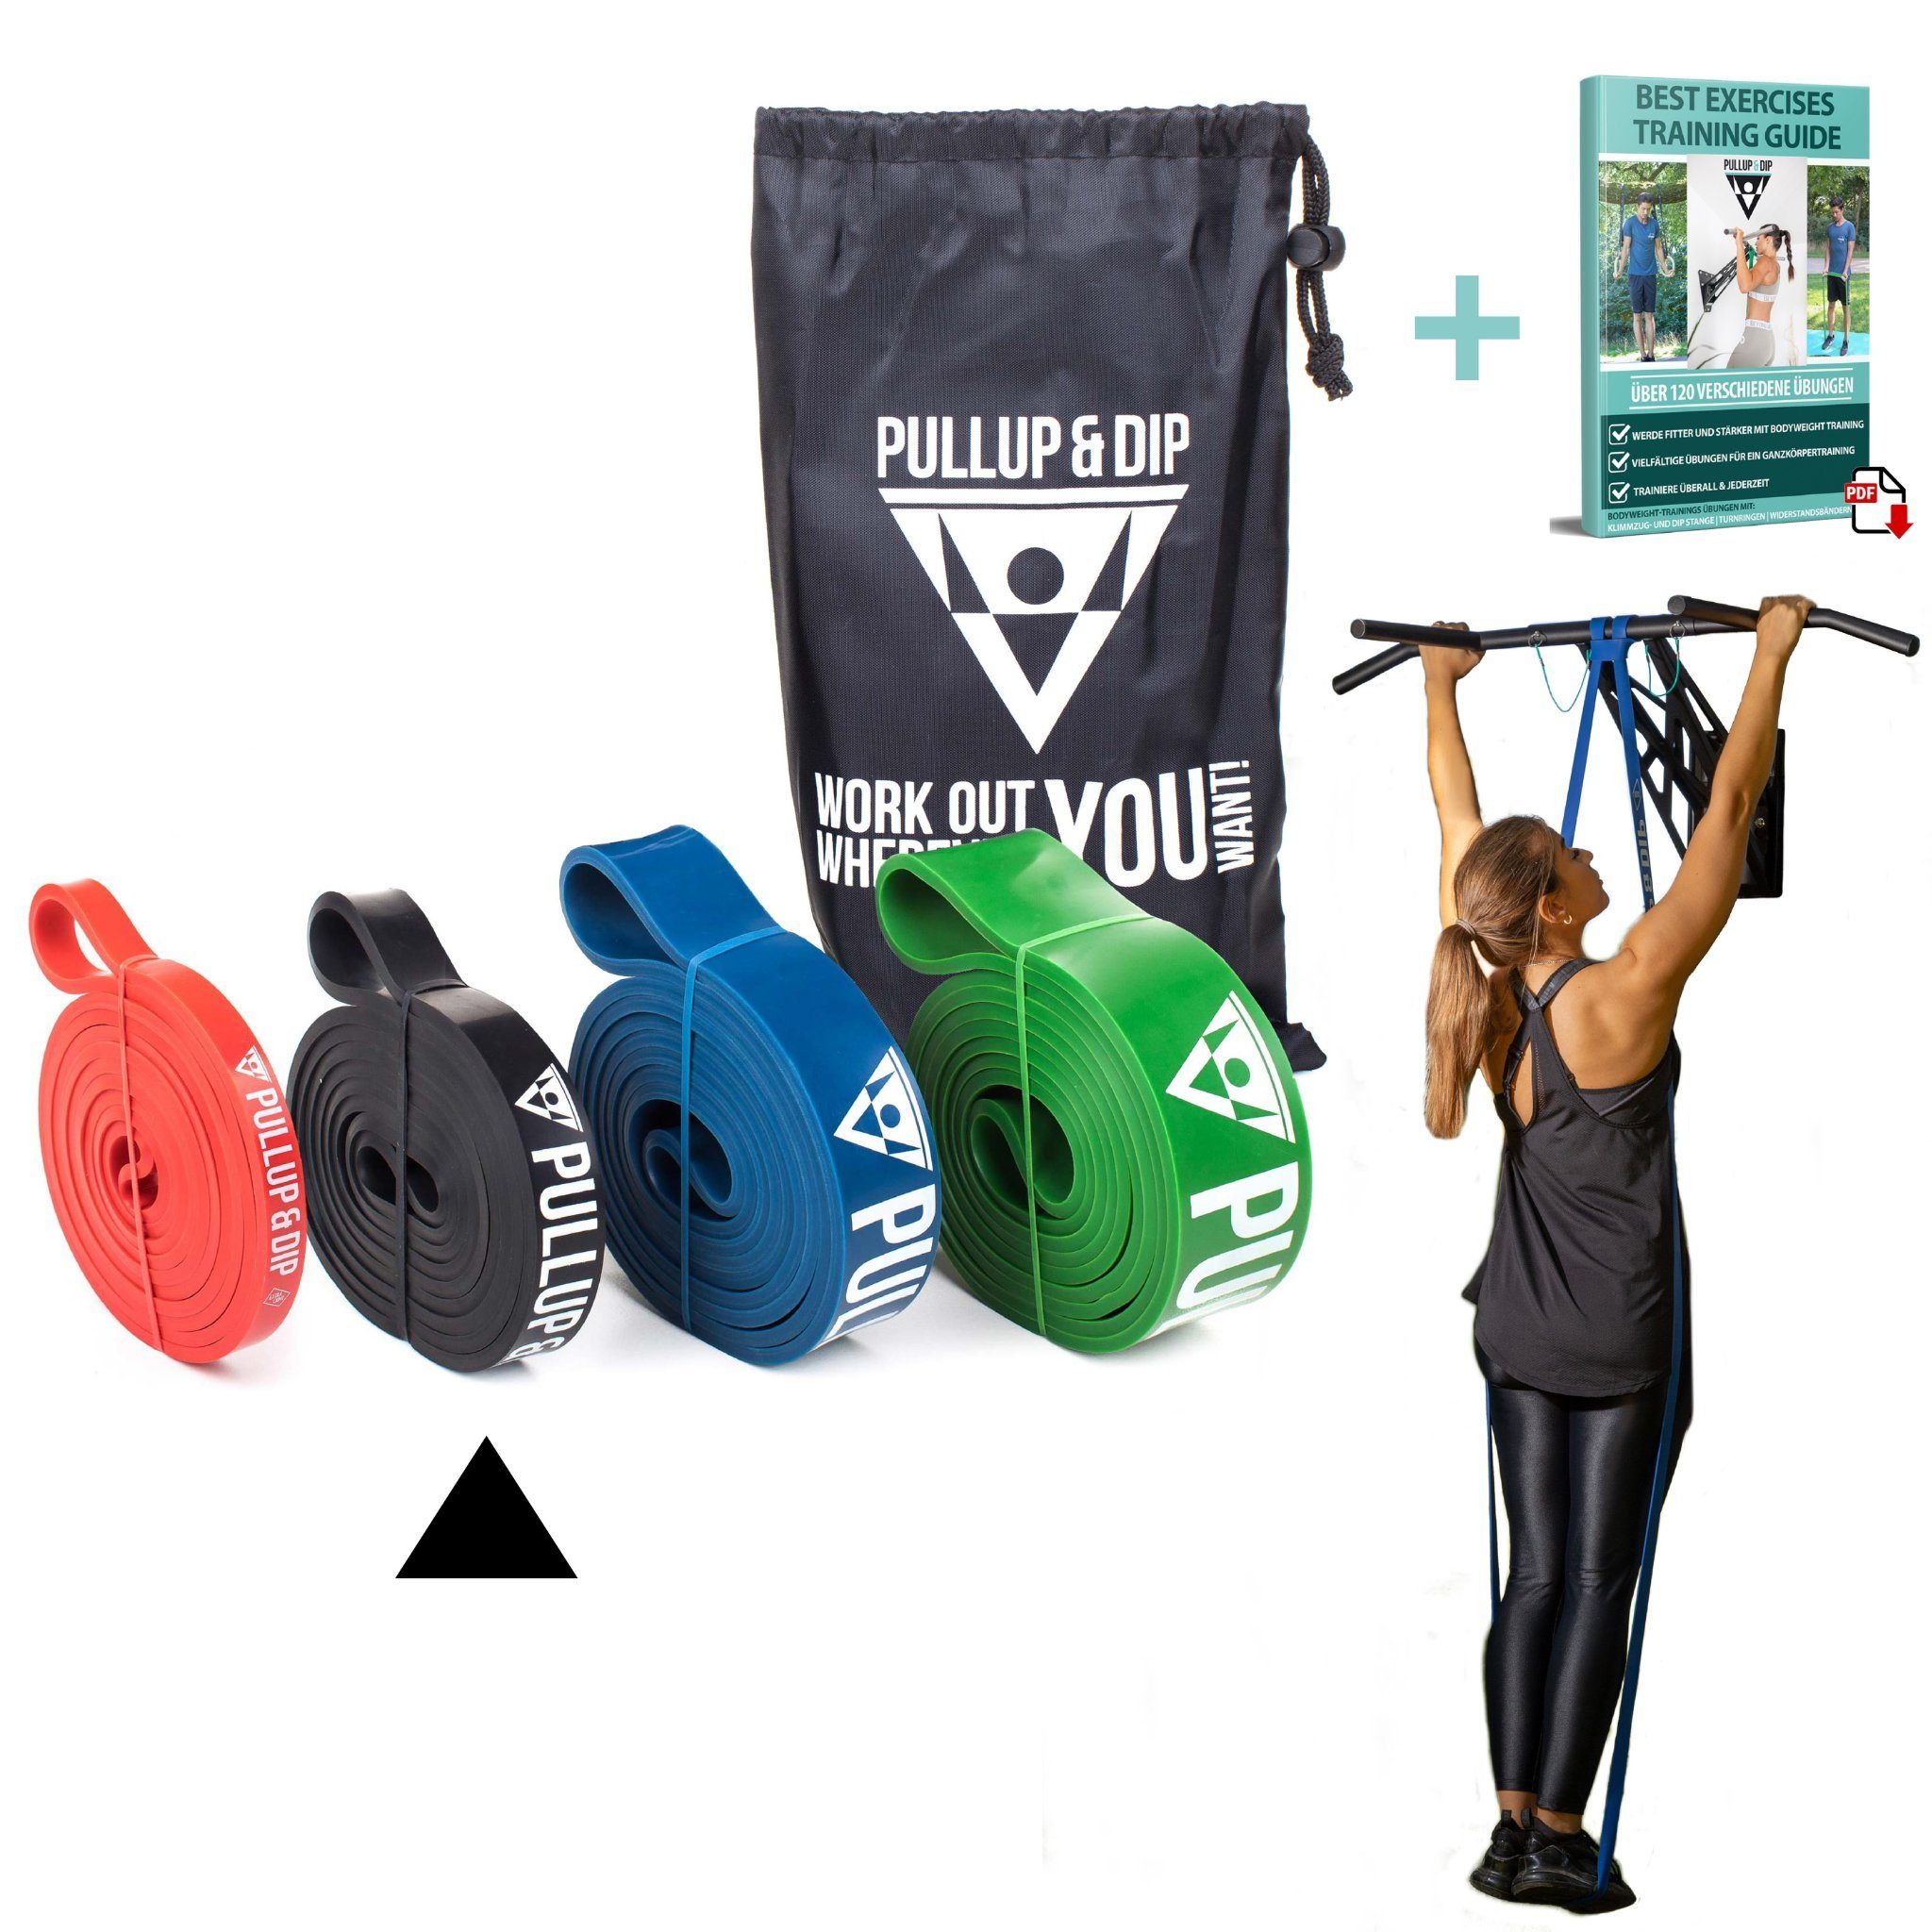 Pullup & Dip Trainingsband Fitnessbänder mit Tasche, Türanker (bei Sets) und Übungsguide